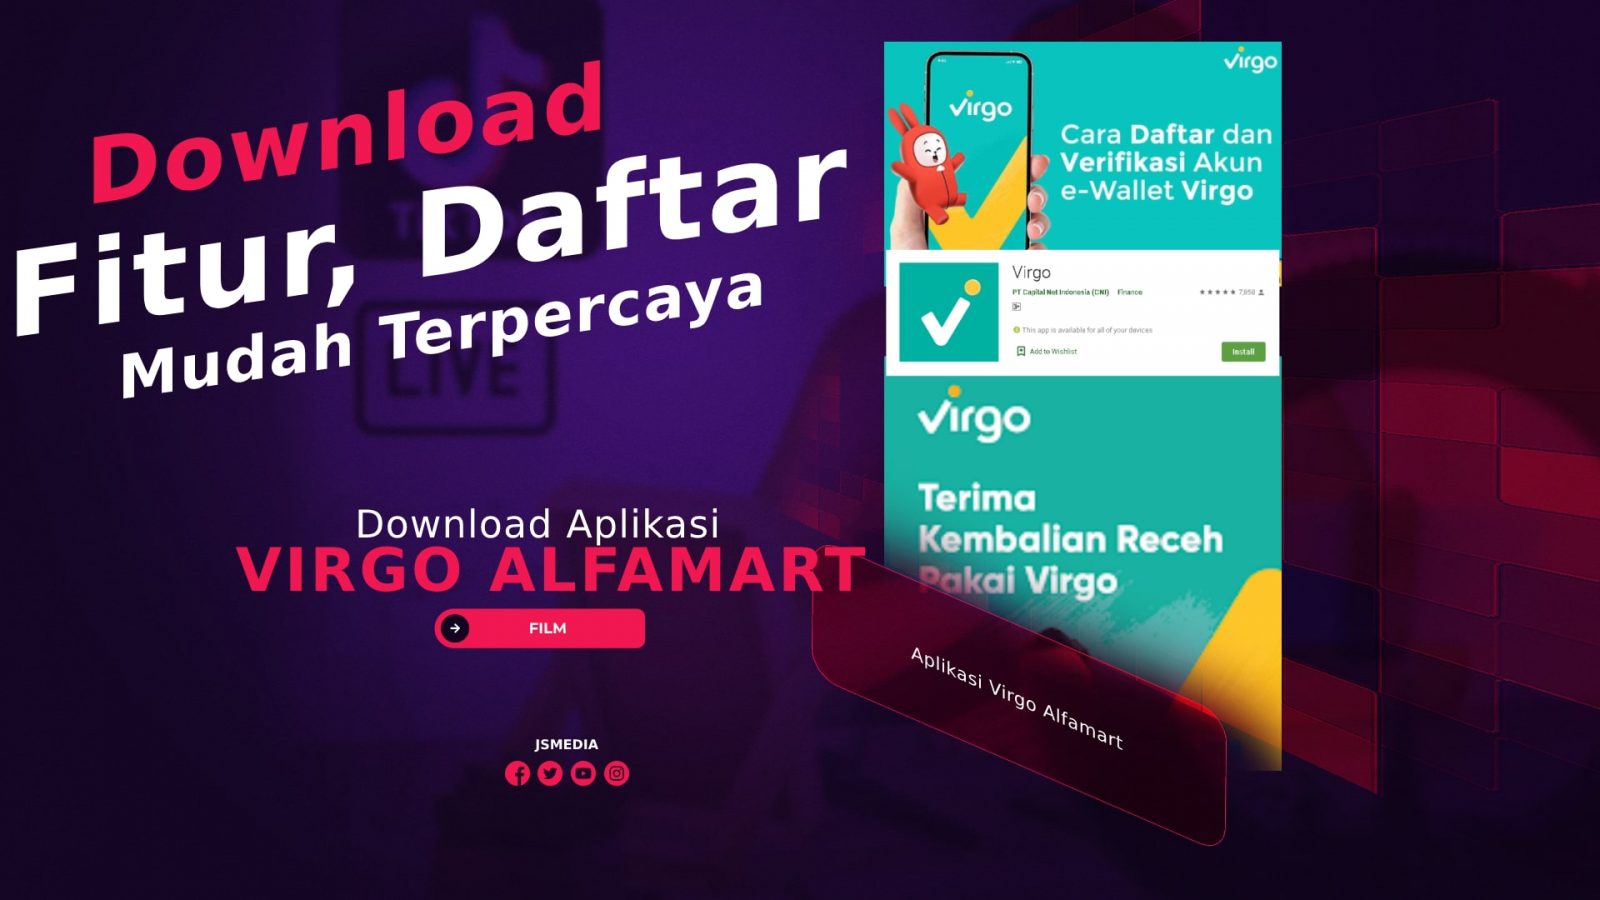 Download Aplikasi Virgo Alfamart Terbaru, Mudah Terpercaya